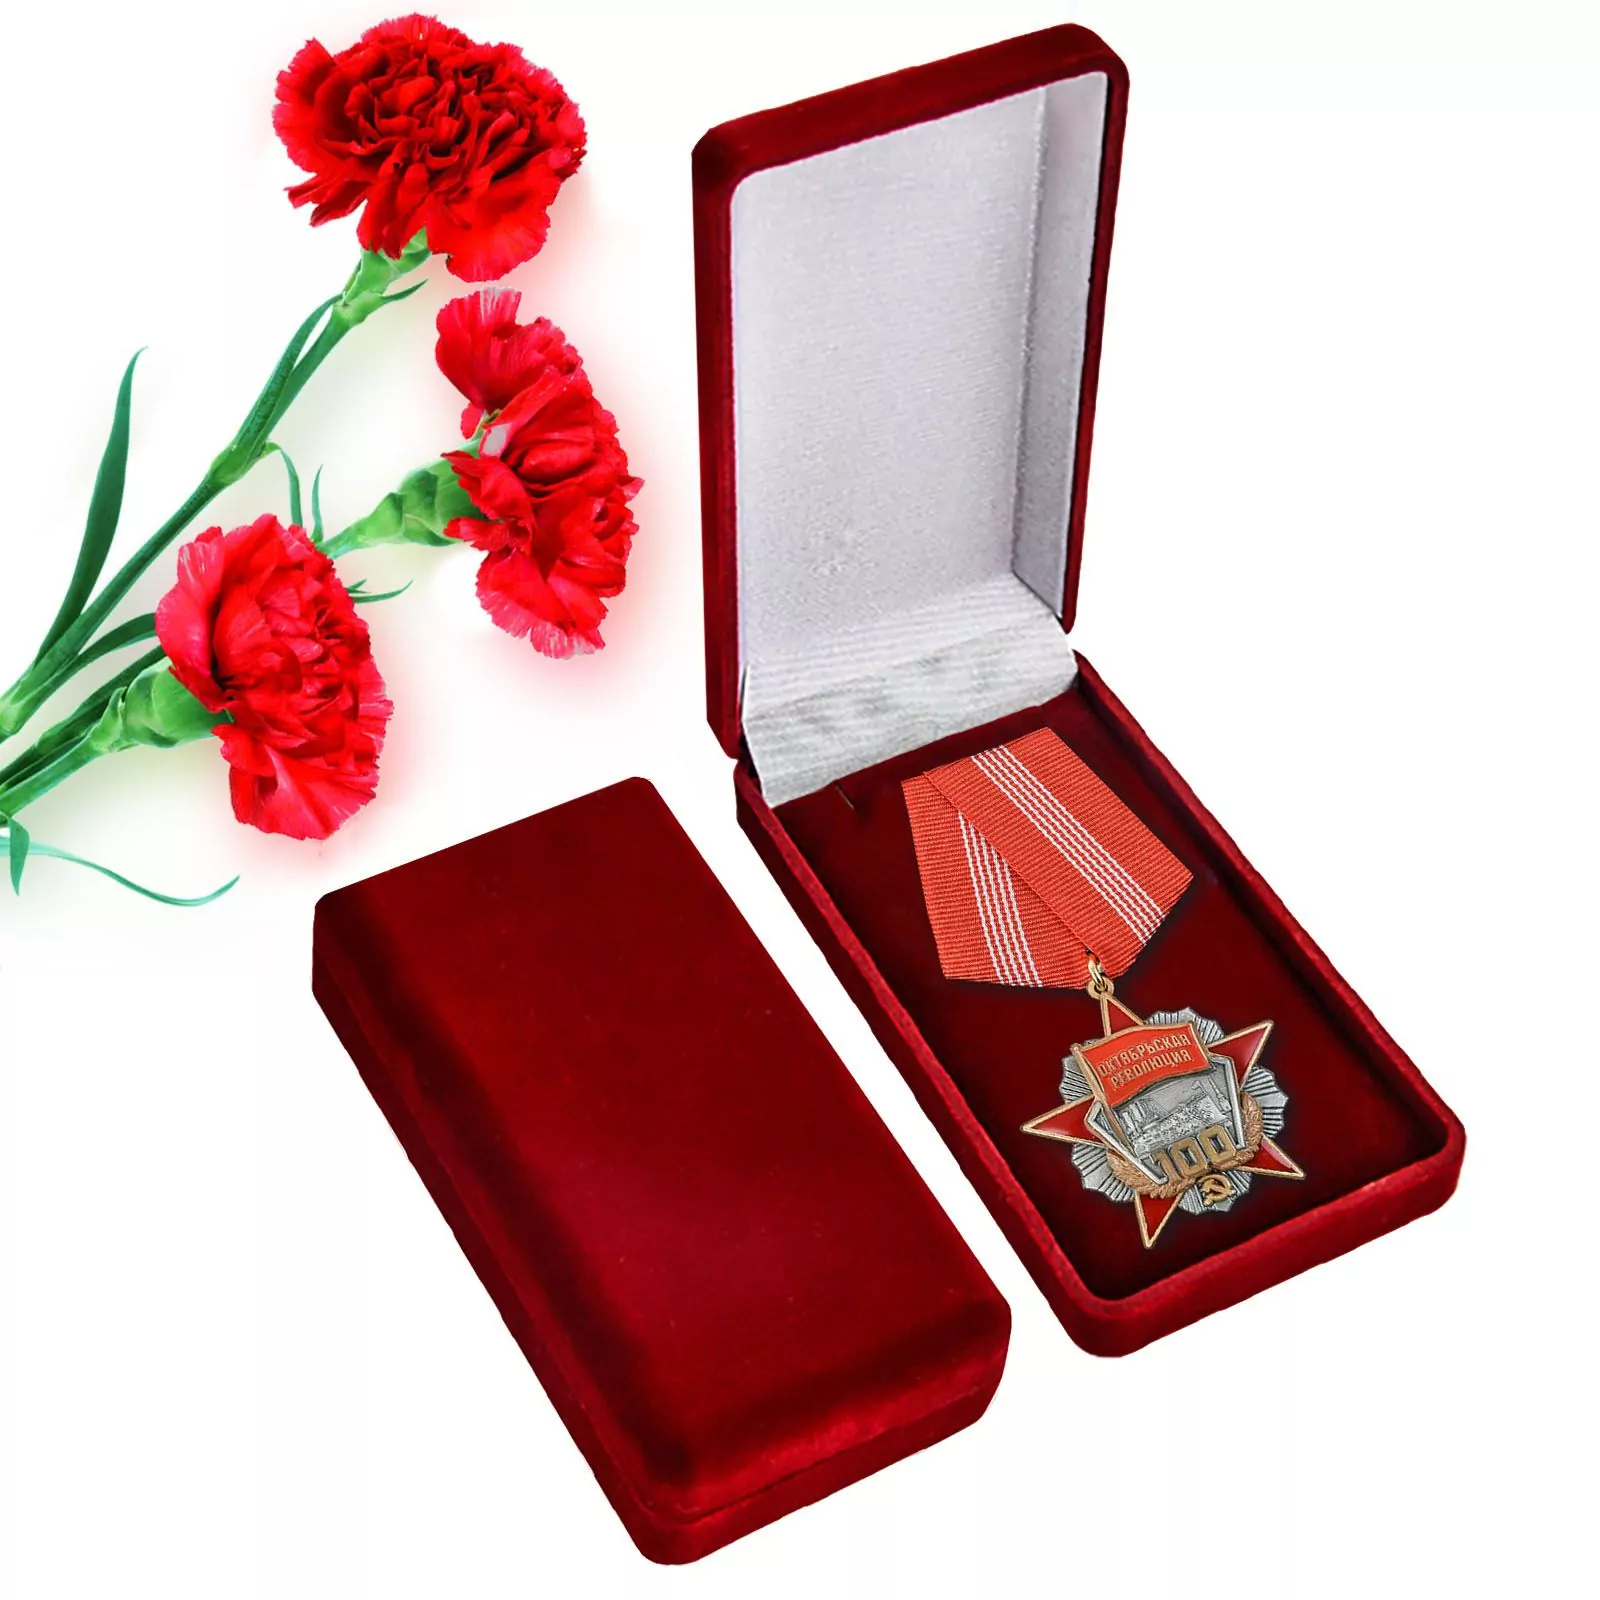 Сувенирная медаль "100 лет Революции" с удостоверением в наградном футляре №1719